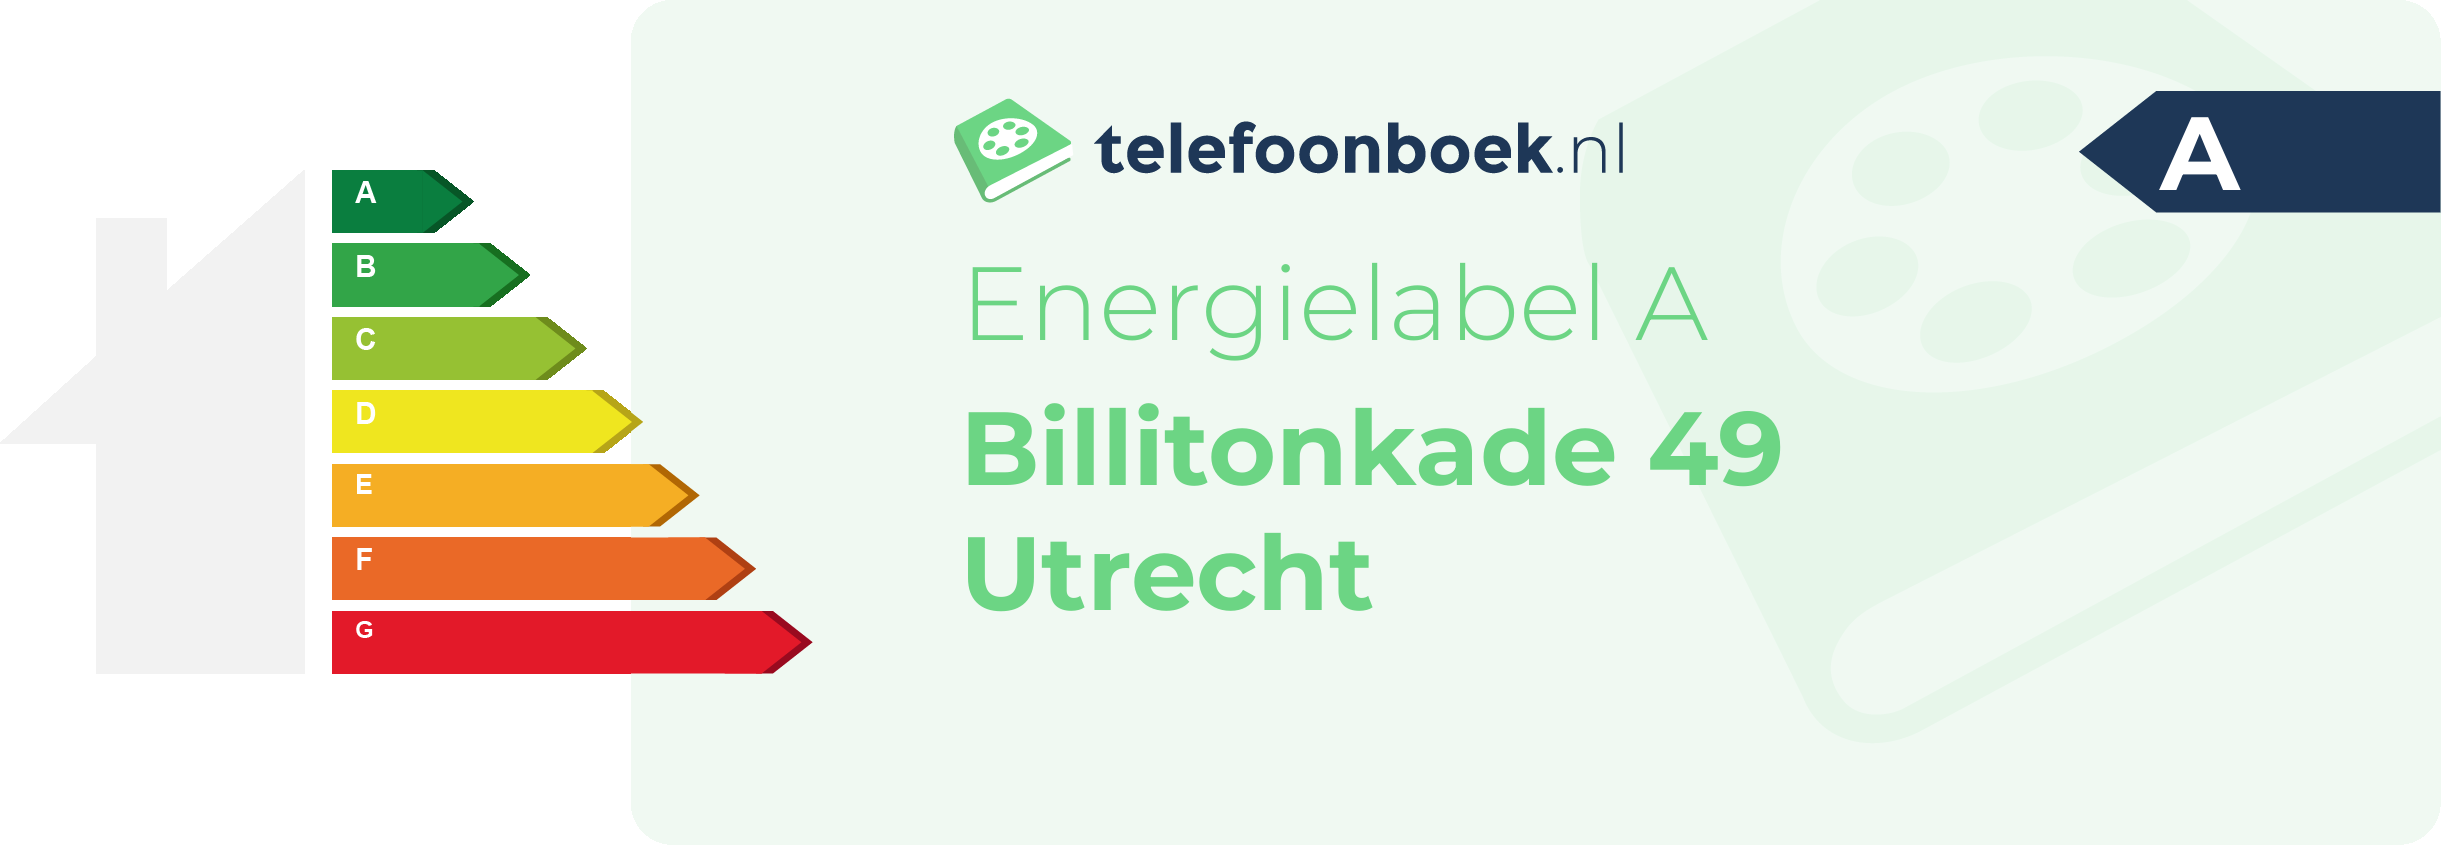 Energielabel Billitonkade 49 Utrecht